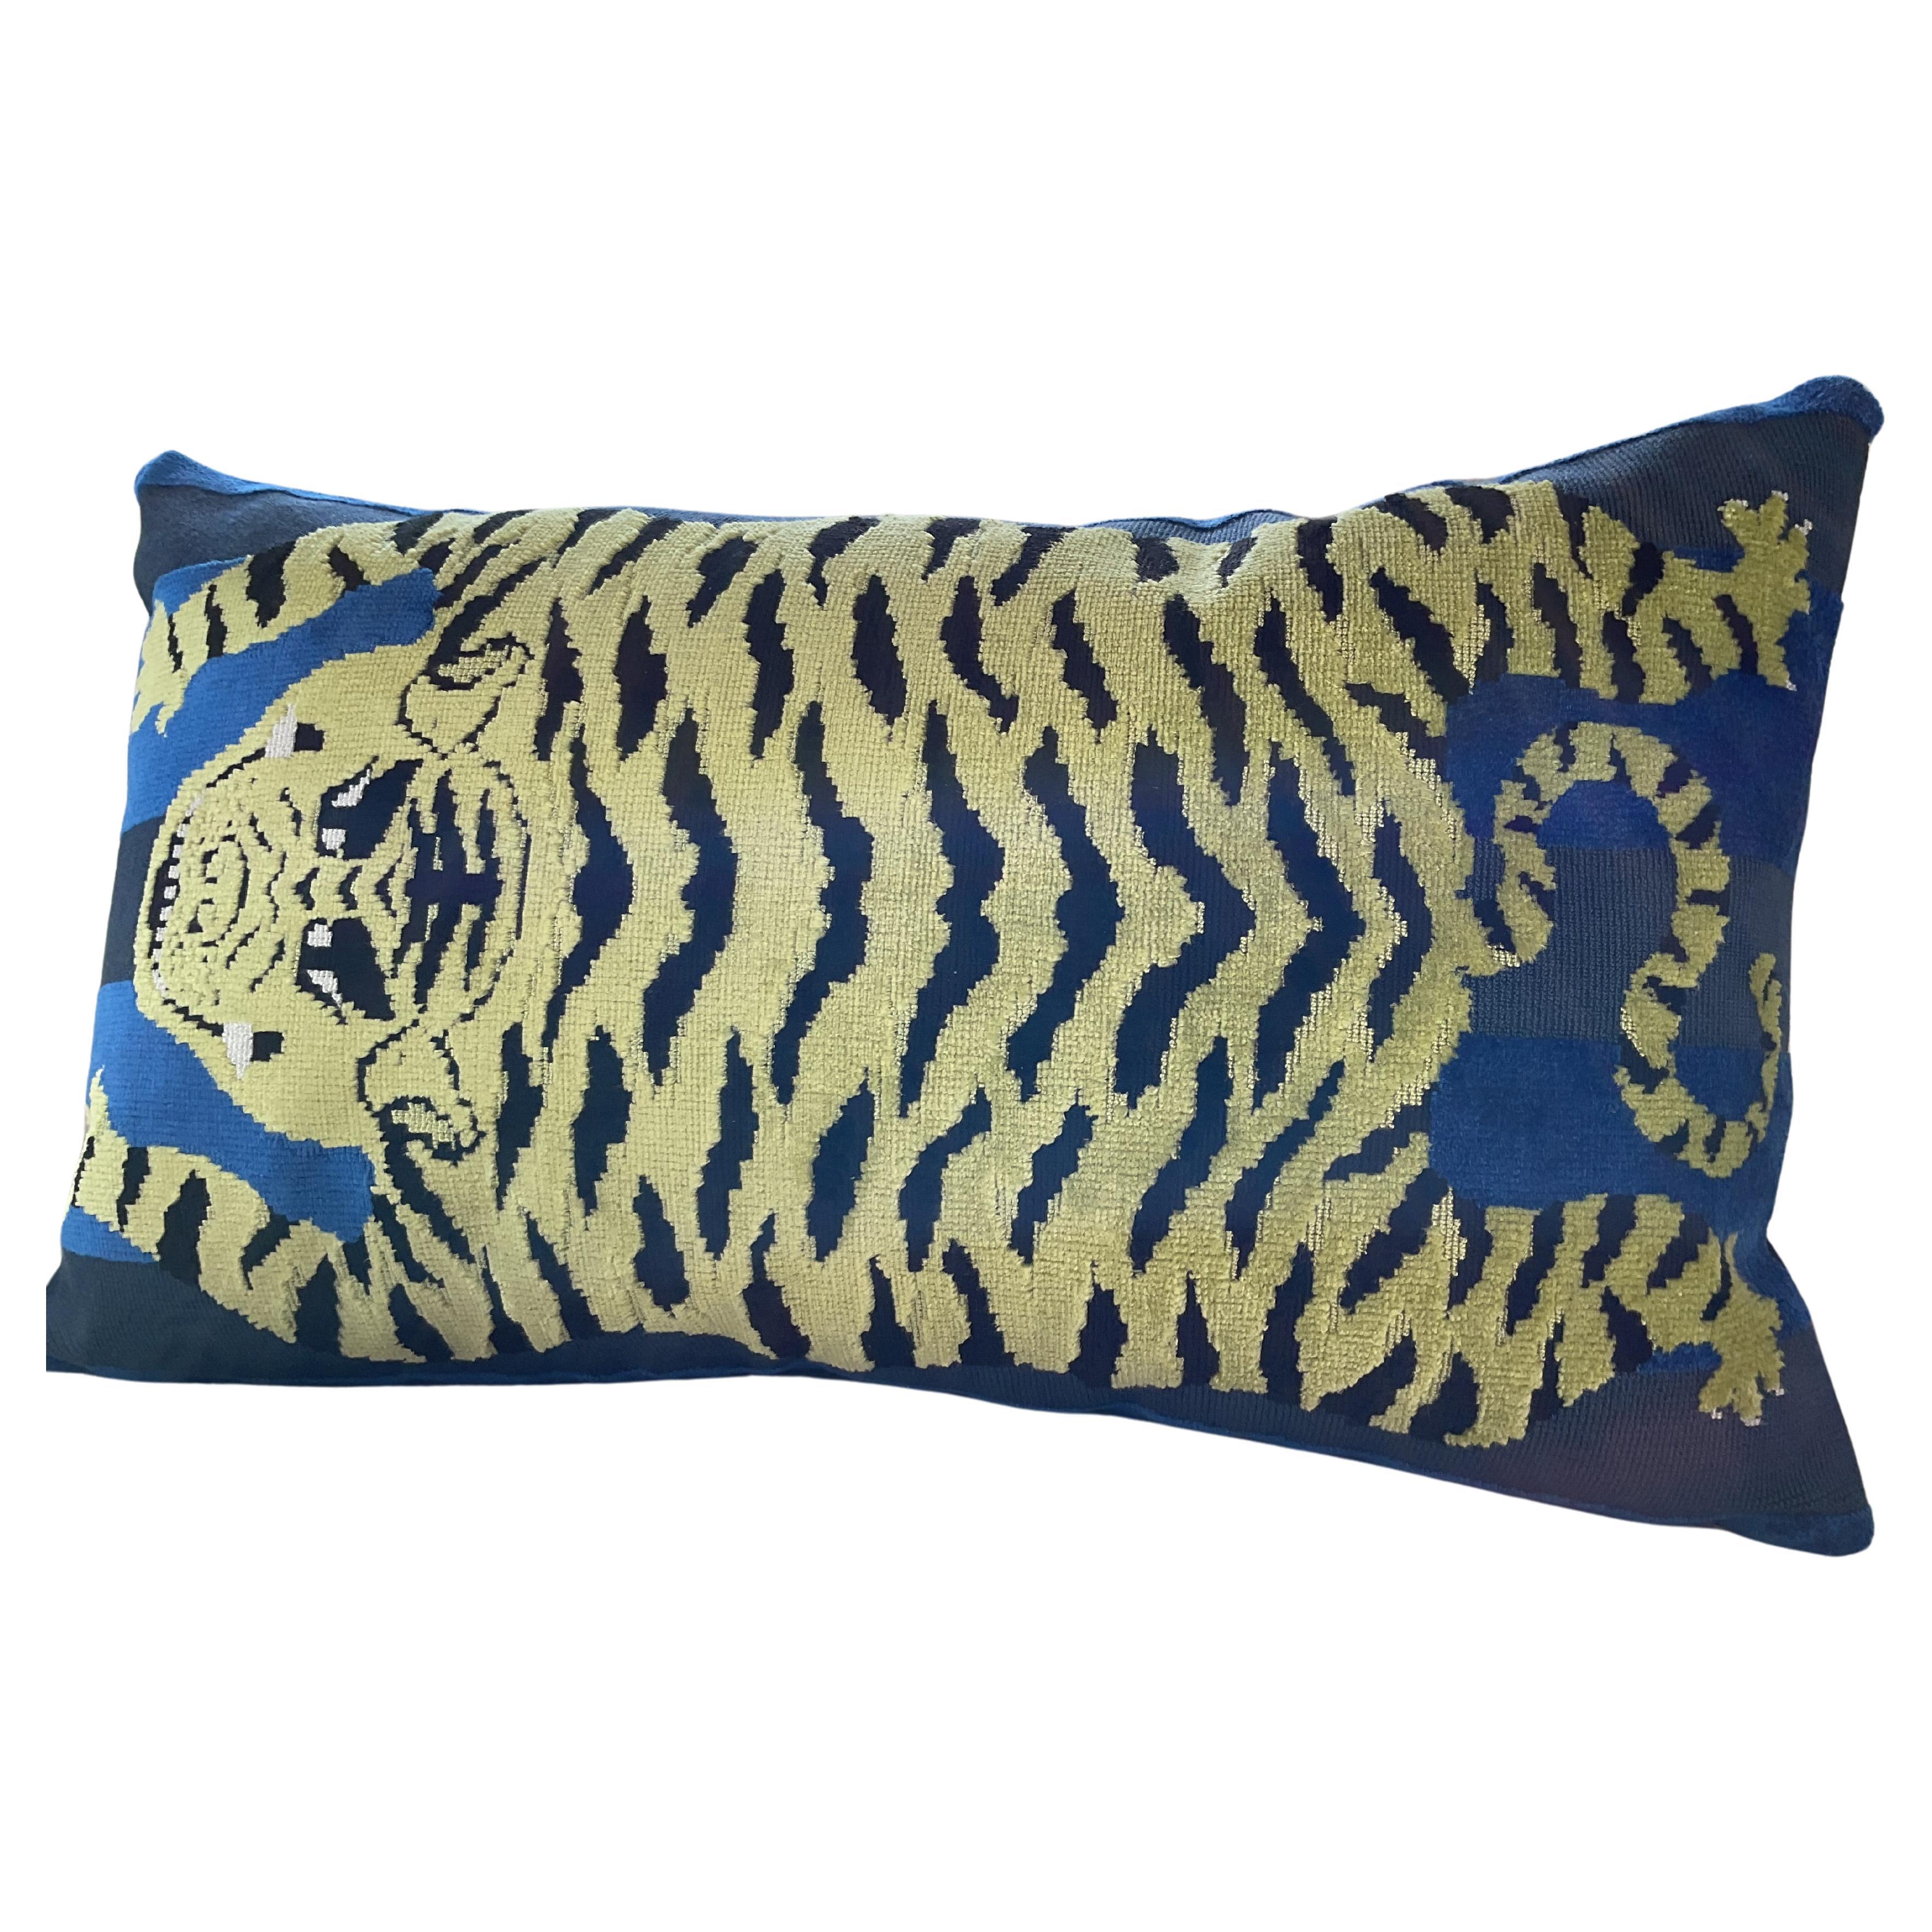 Schumacher Jokhang Tiger in blue down filled pillow measuring 12 x 20